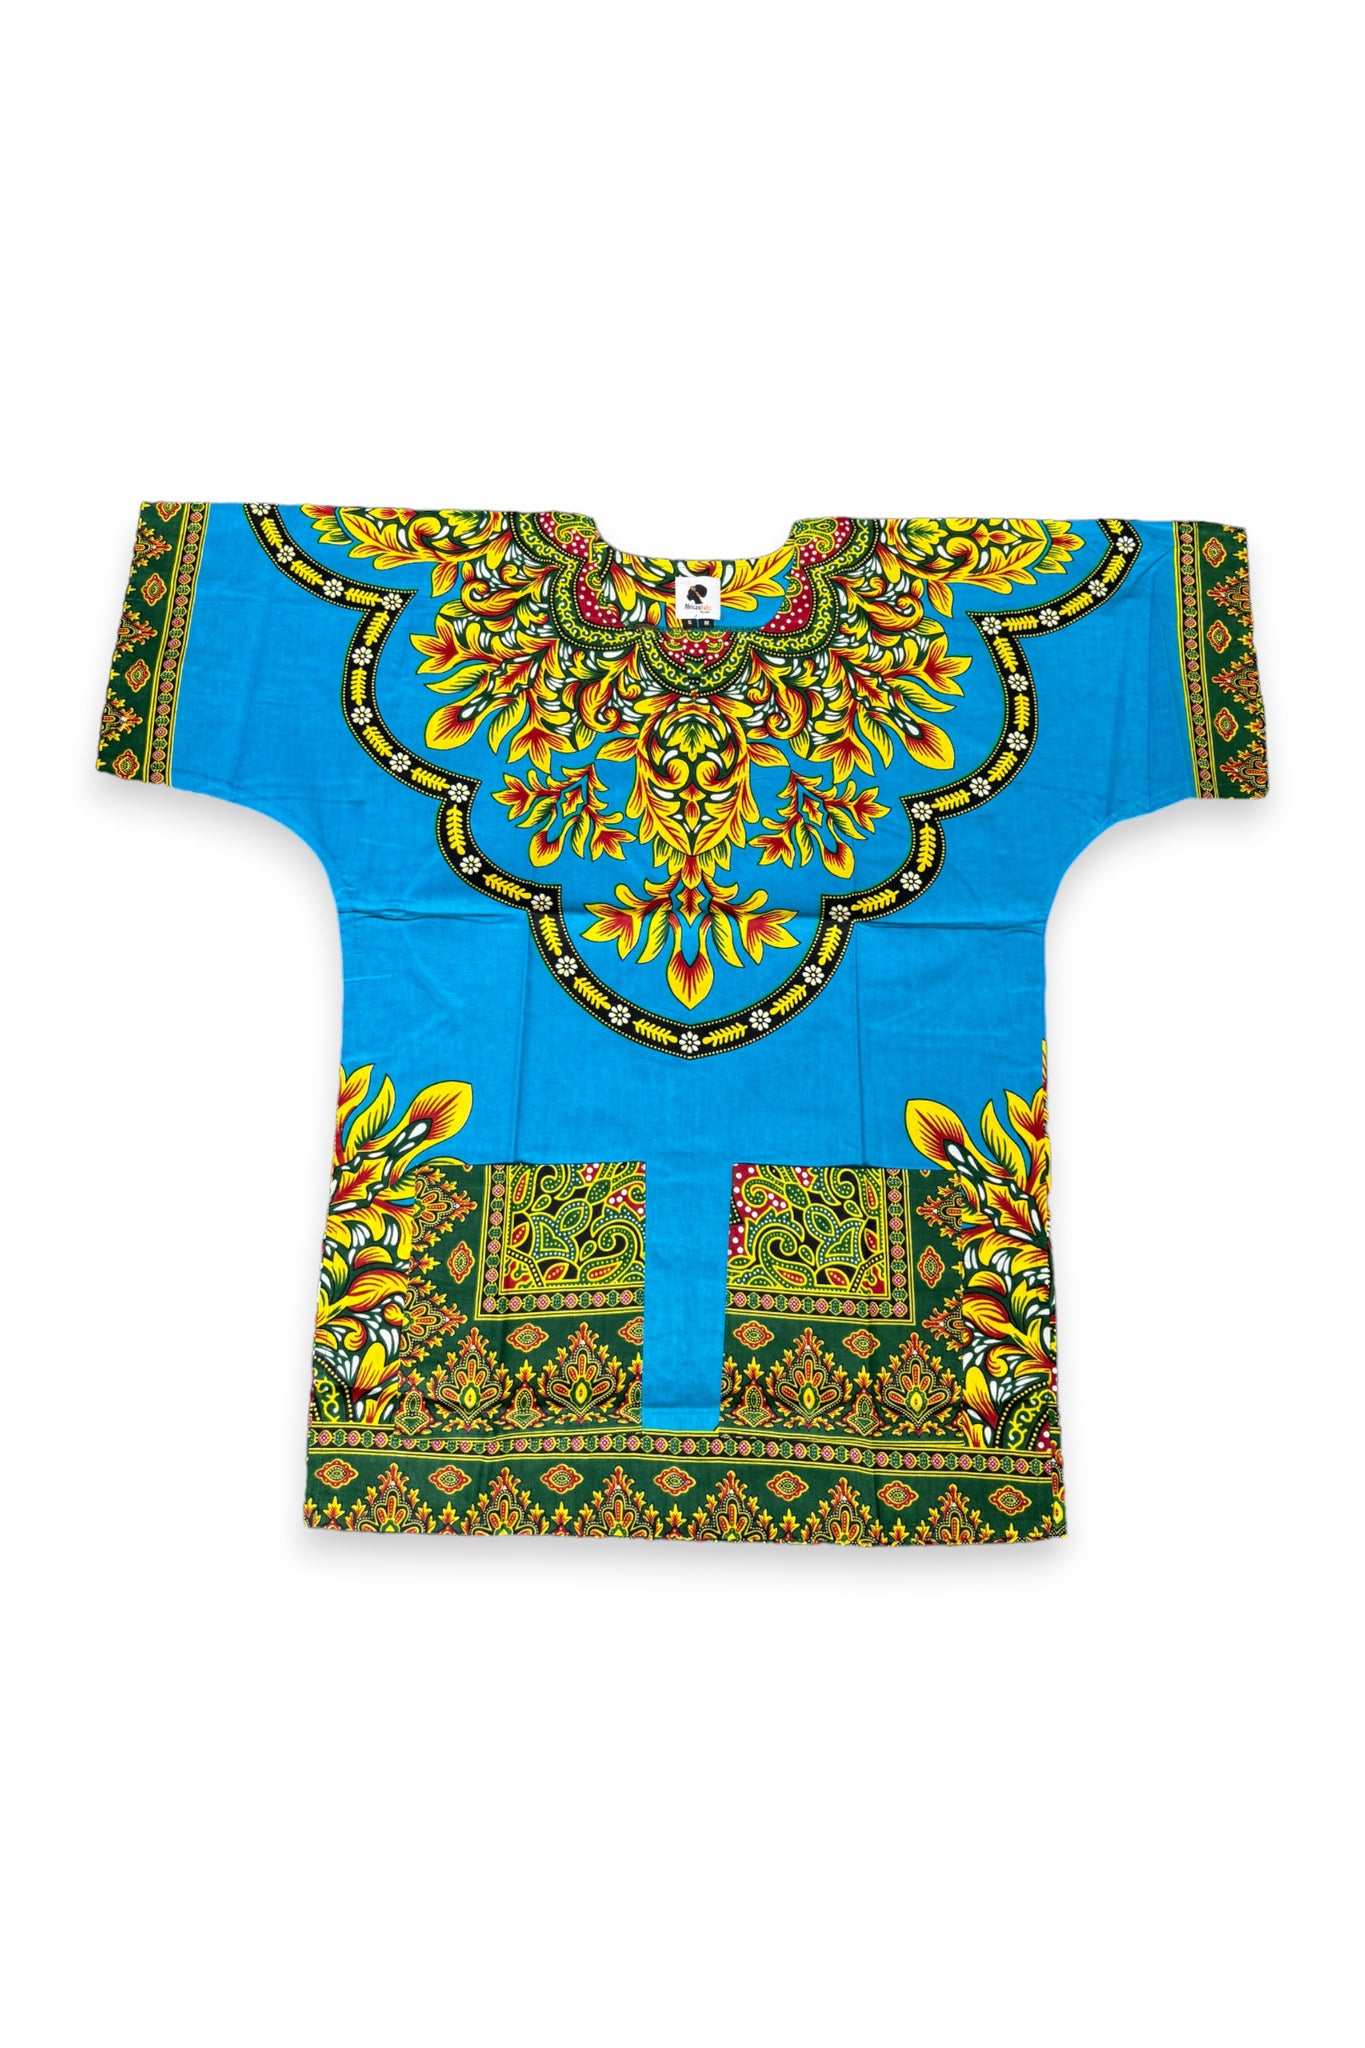 Blauwe Dashiki Shirt / Dashiki Jurk - Afrikaans shirt - Unisex